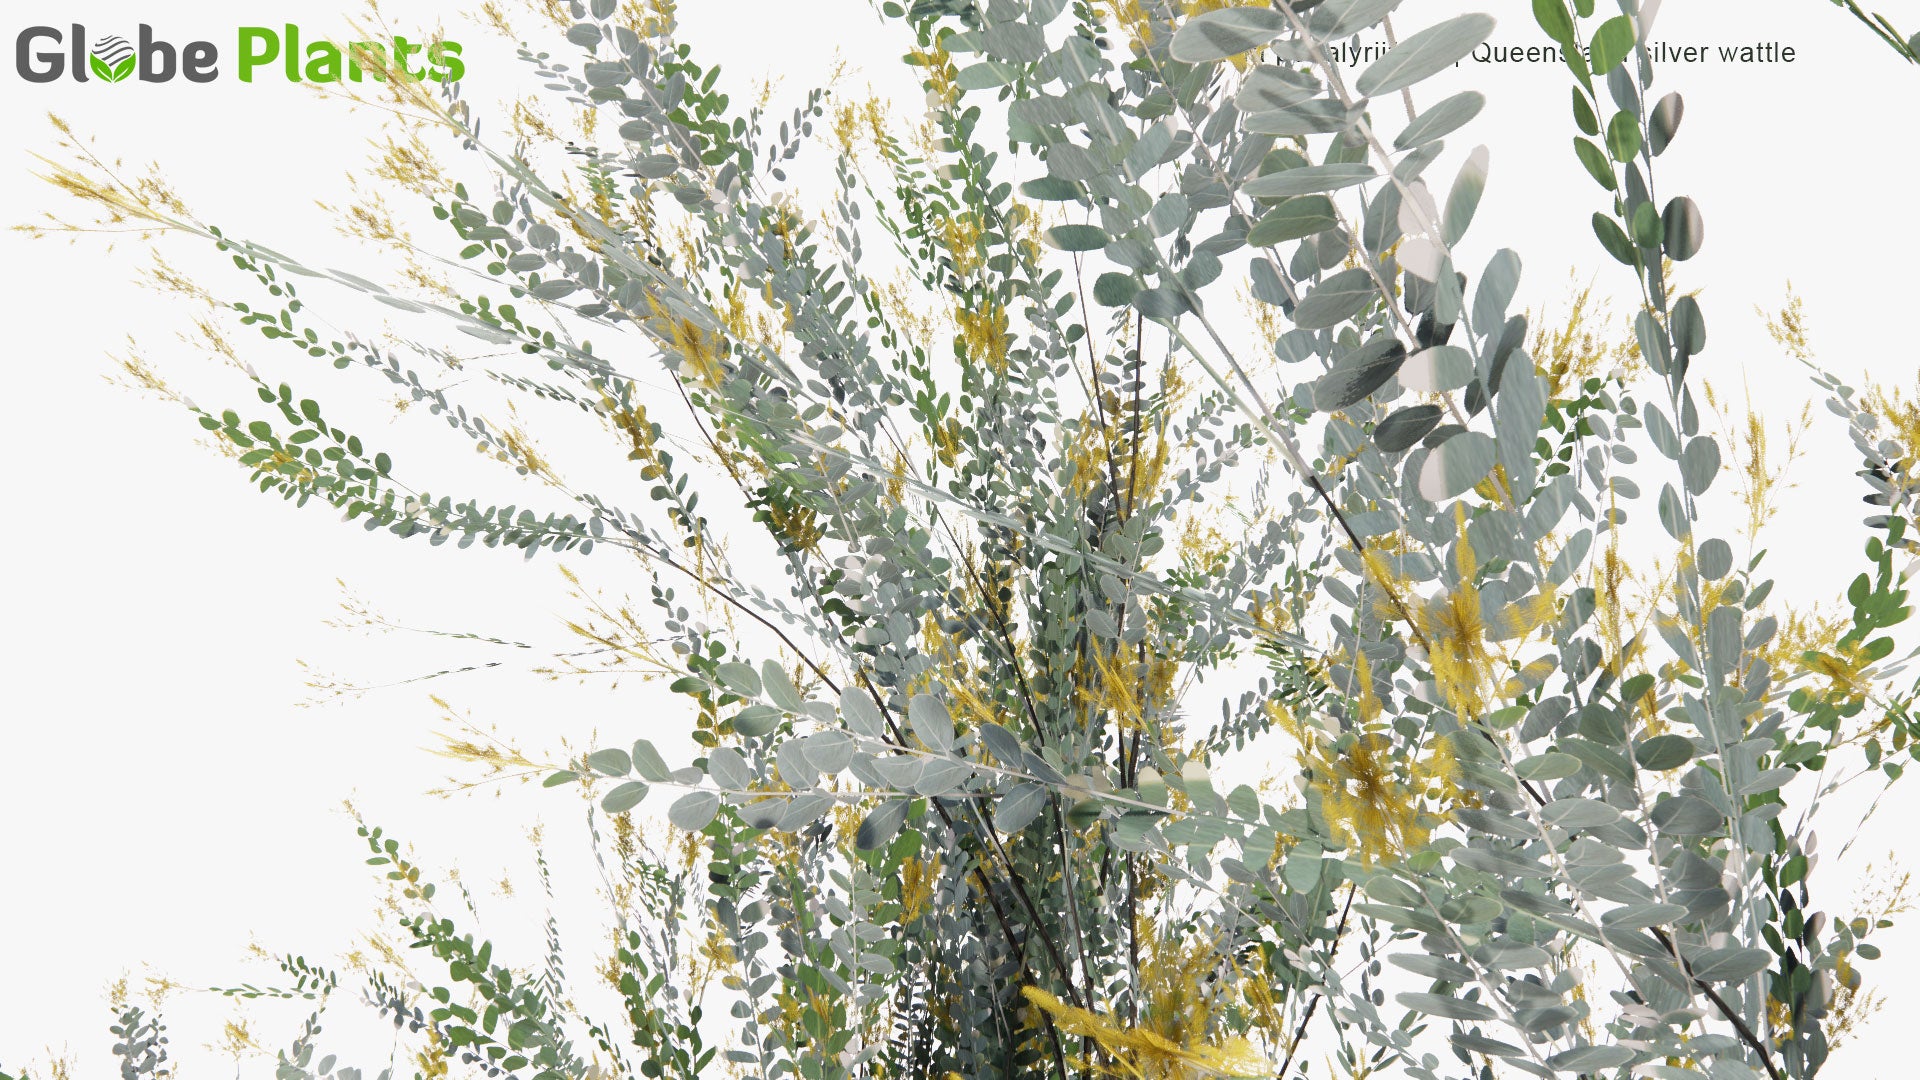 Low Poly Acacia Podalyriifolia - Mount Morgan Wattle, Queensland Silver Wattle, Queensland Wattle, Pearl Acacia, Pearl wattle, Silver Wattle, Mimosa (3D Model)